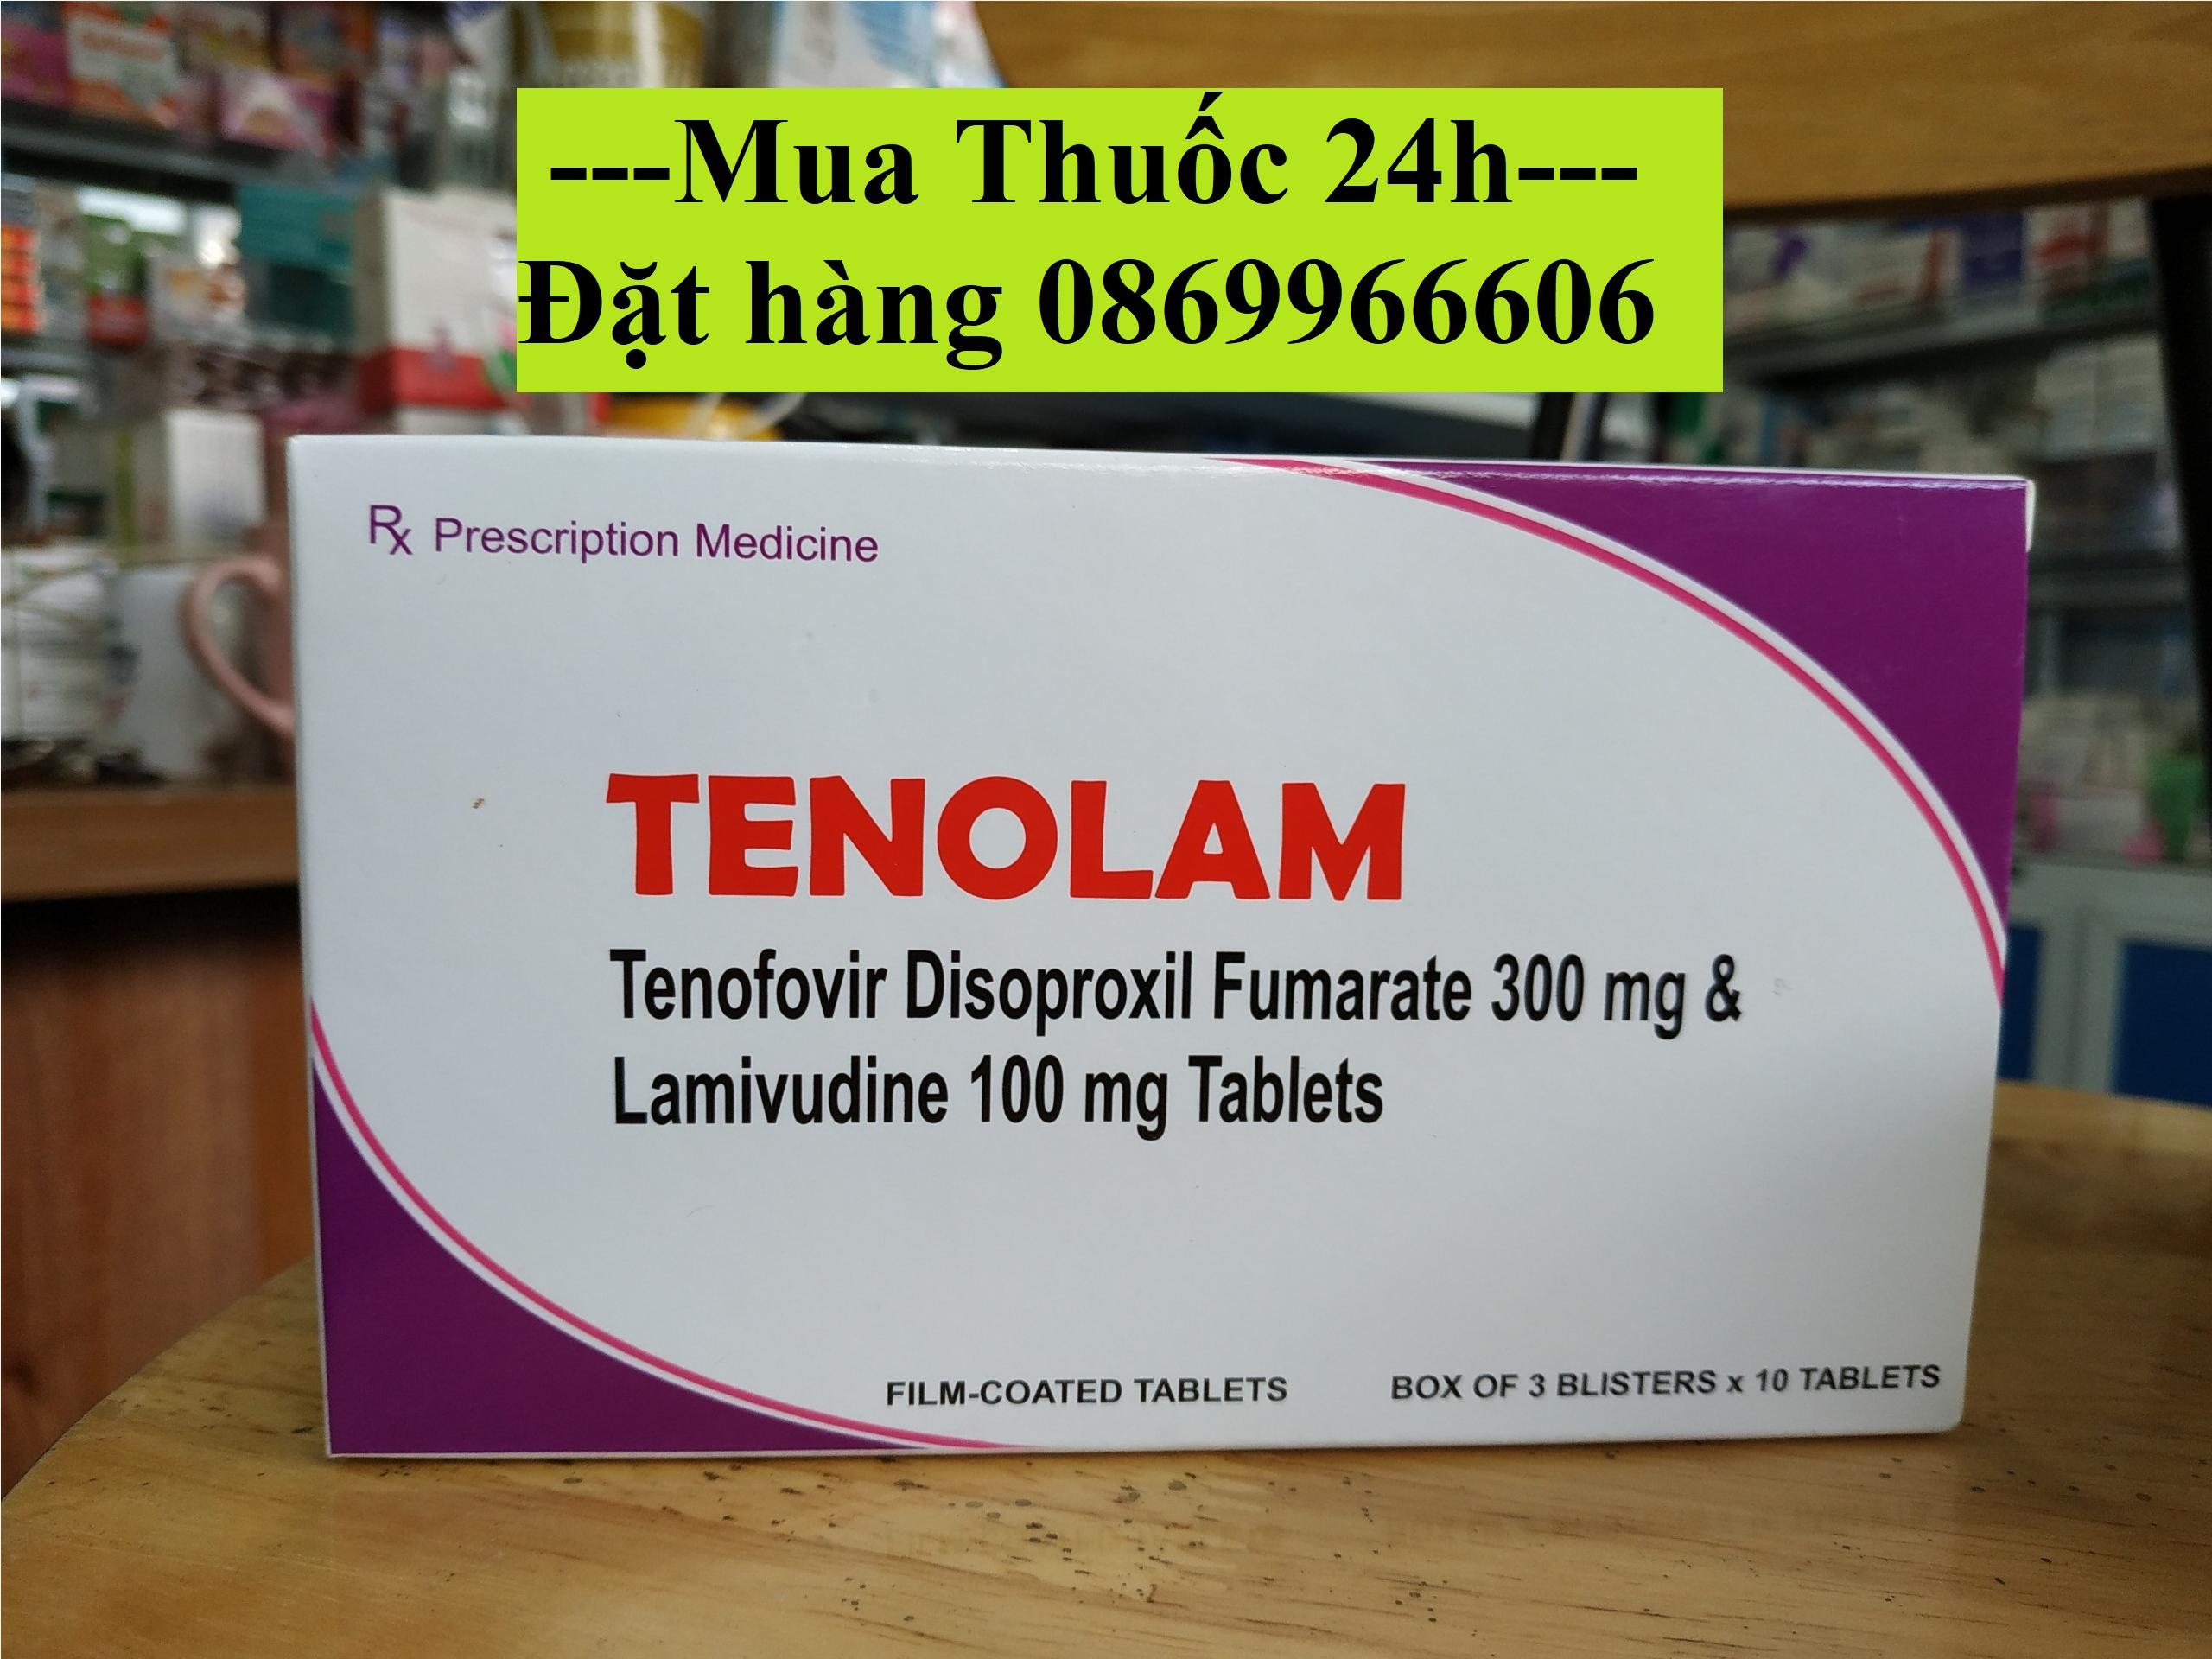 Thuốc Tenolam giá bao nhiêu mua ở đâu?